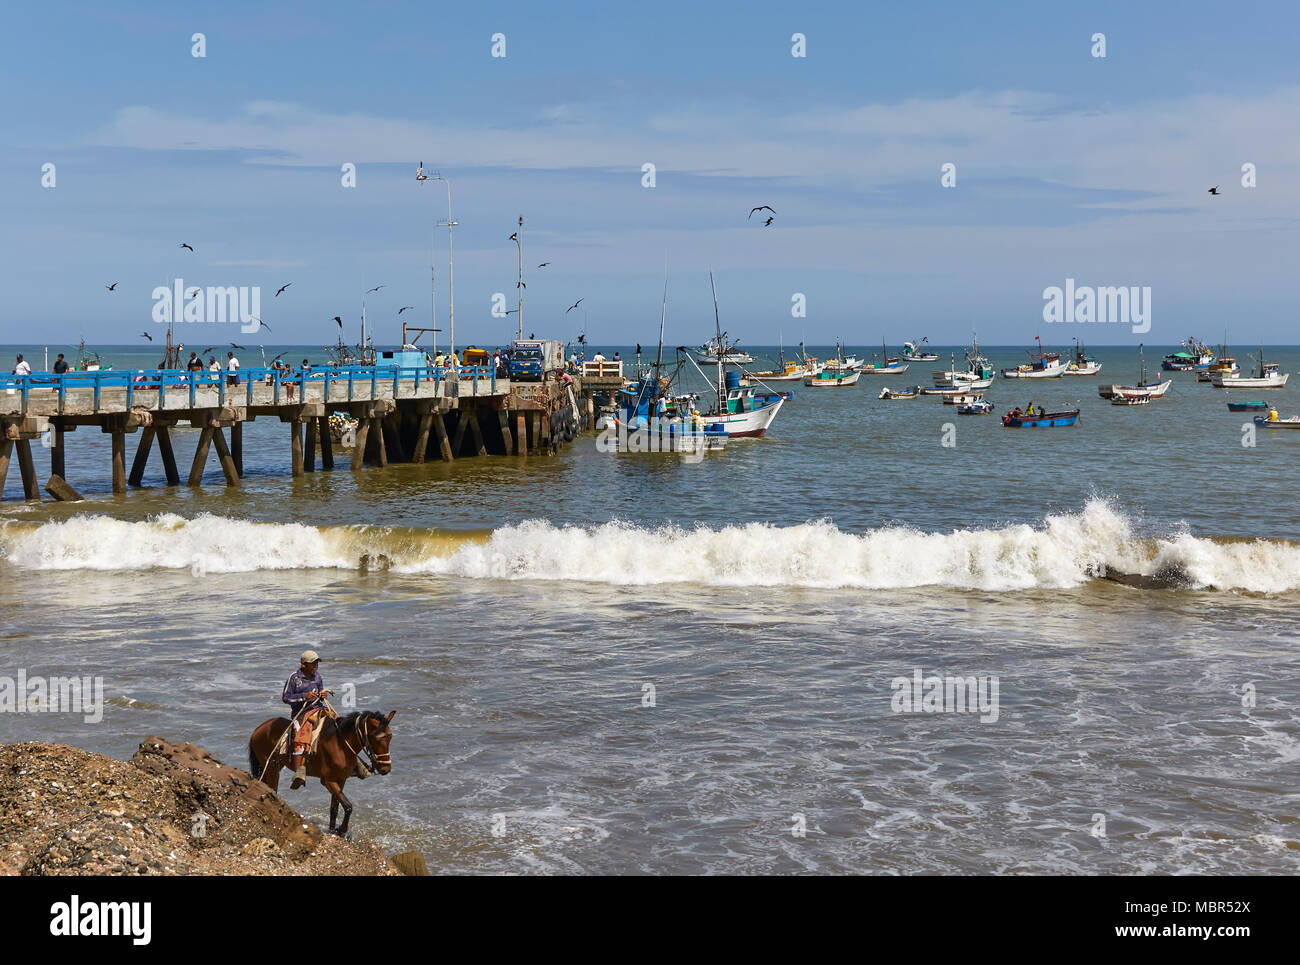 Sur la jetée de pêche pêcheurs Mancora de leurs bateaux et de superviser la distribution de leurs poissons, tandis qu'un cheval-cavalier rides le long de la plage dans la F Banque D'Images